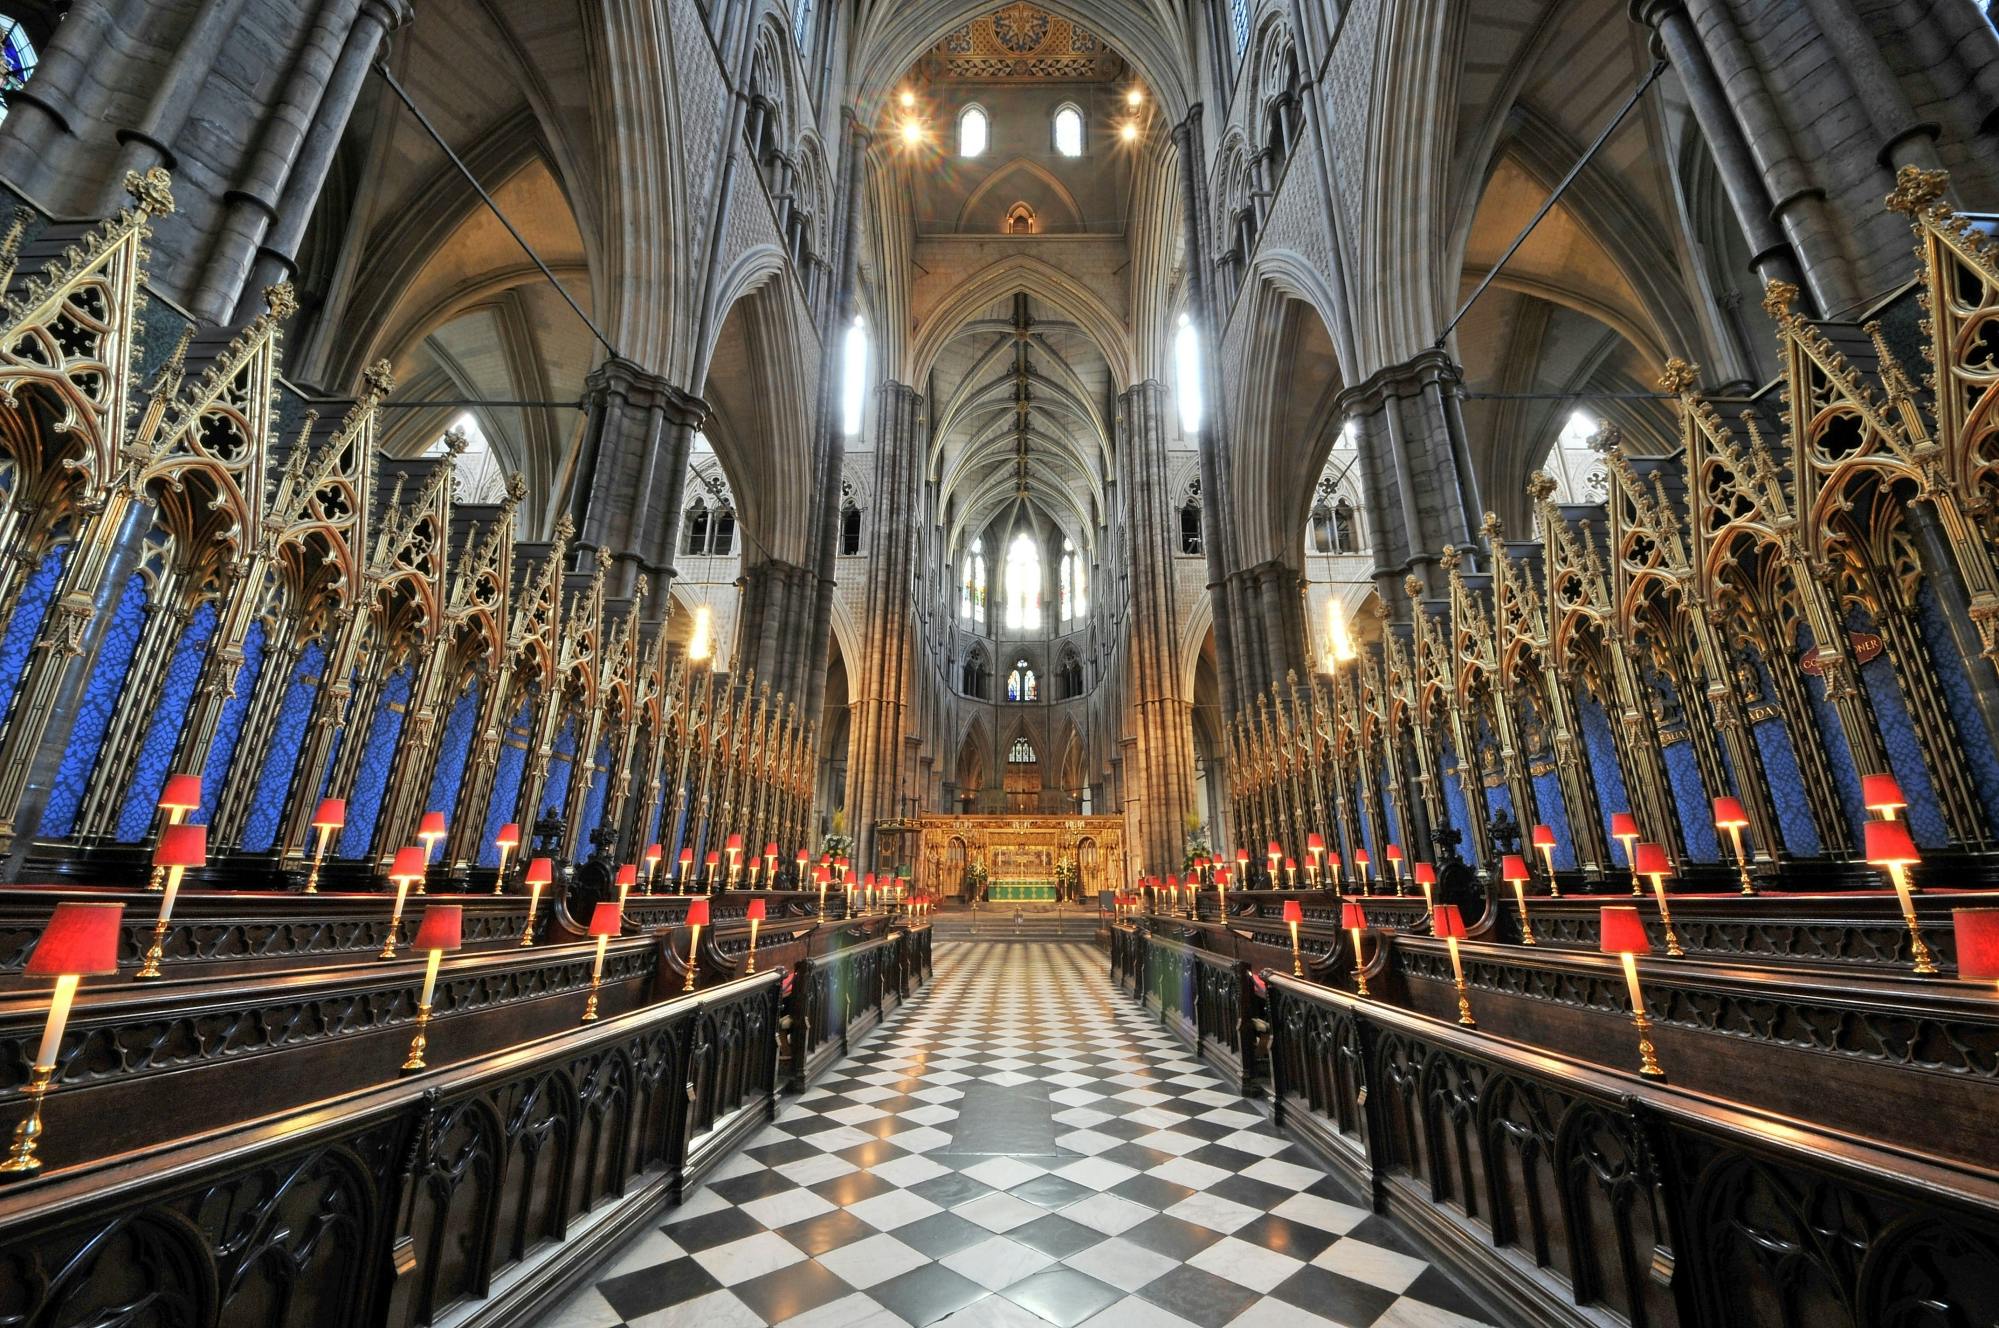 Visite guidée de l'abbaye de Westminster avec London Eye en option